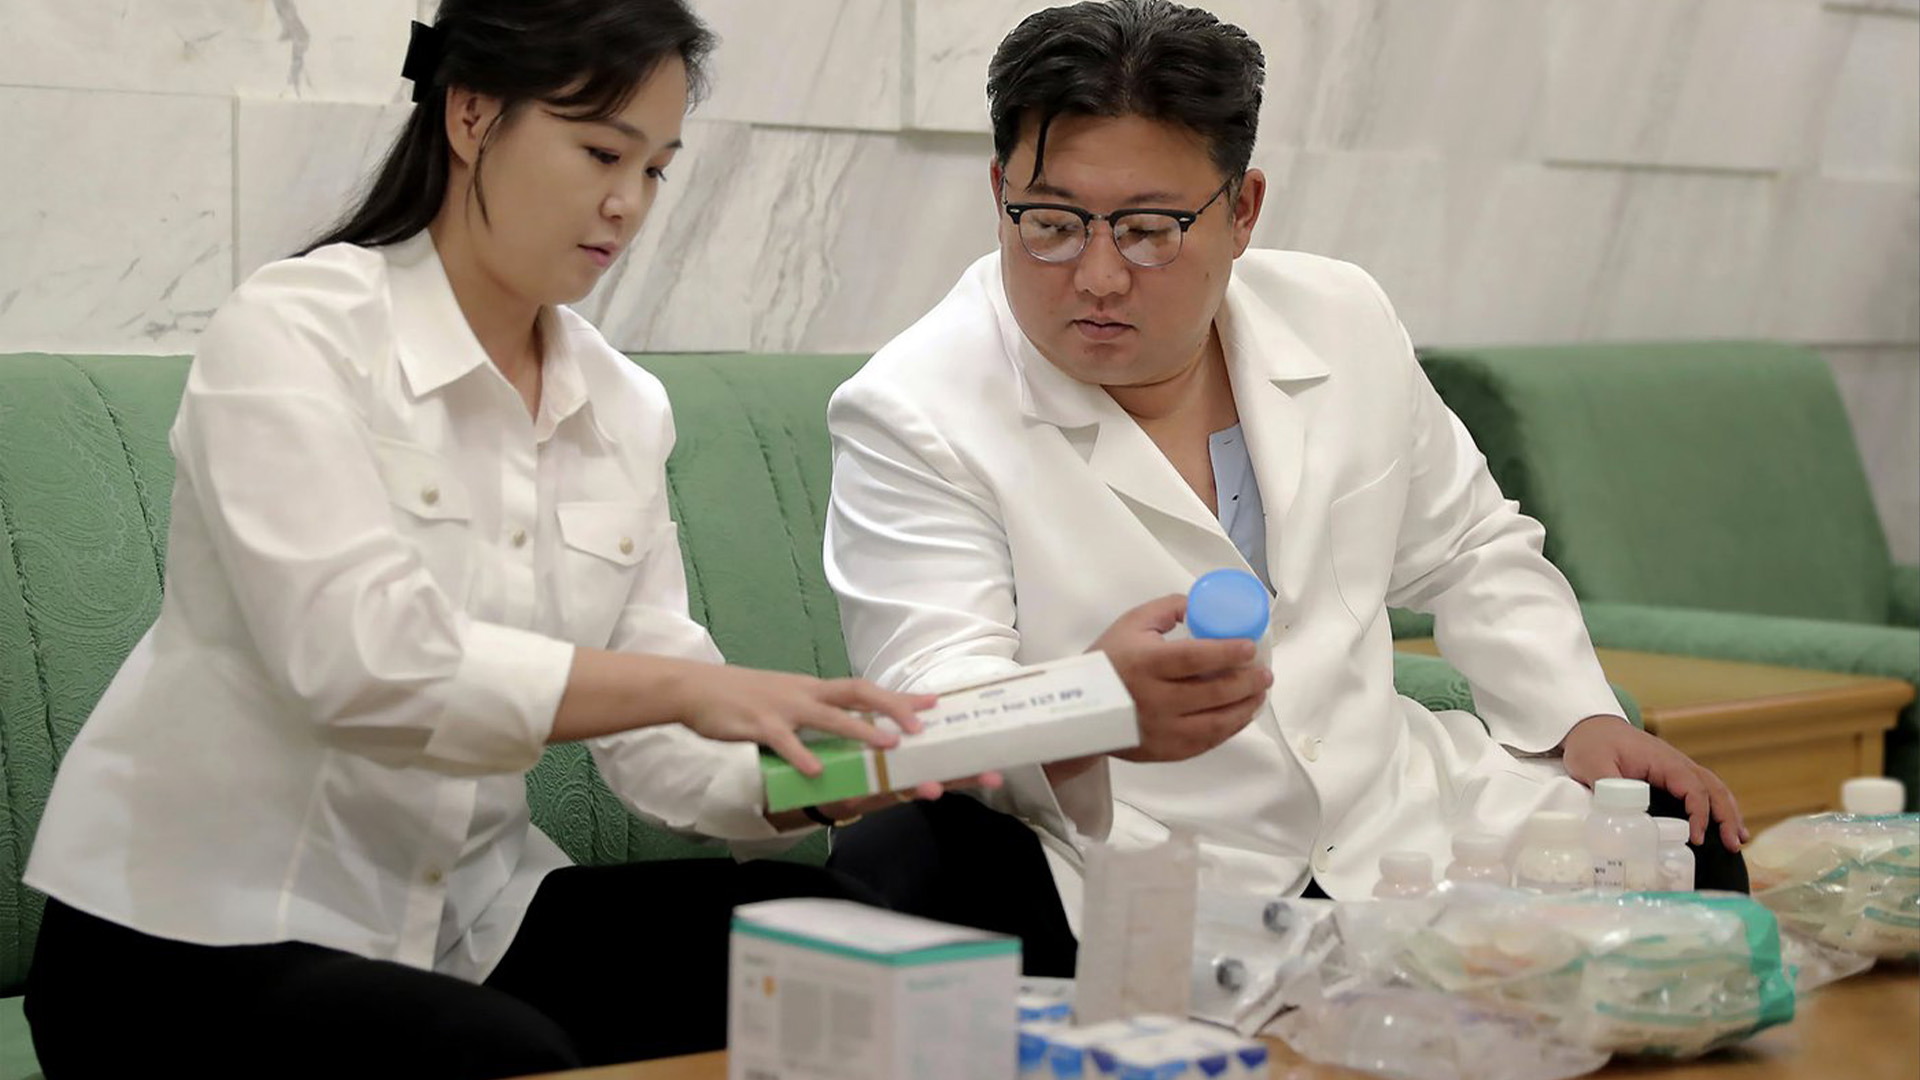 Le principal quotidien du pays, le Rodong Sinmun, a publié en première page une photo montrant Kim Jong-un et sa femme Ri Sol-ju en train d'examiner des solutions salines et des médicaments dont, selon la publication, ils ont fait don.